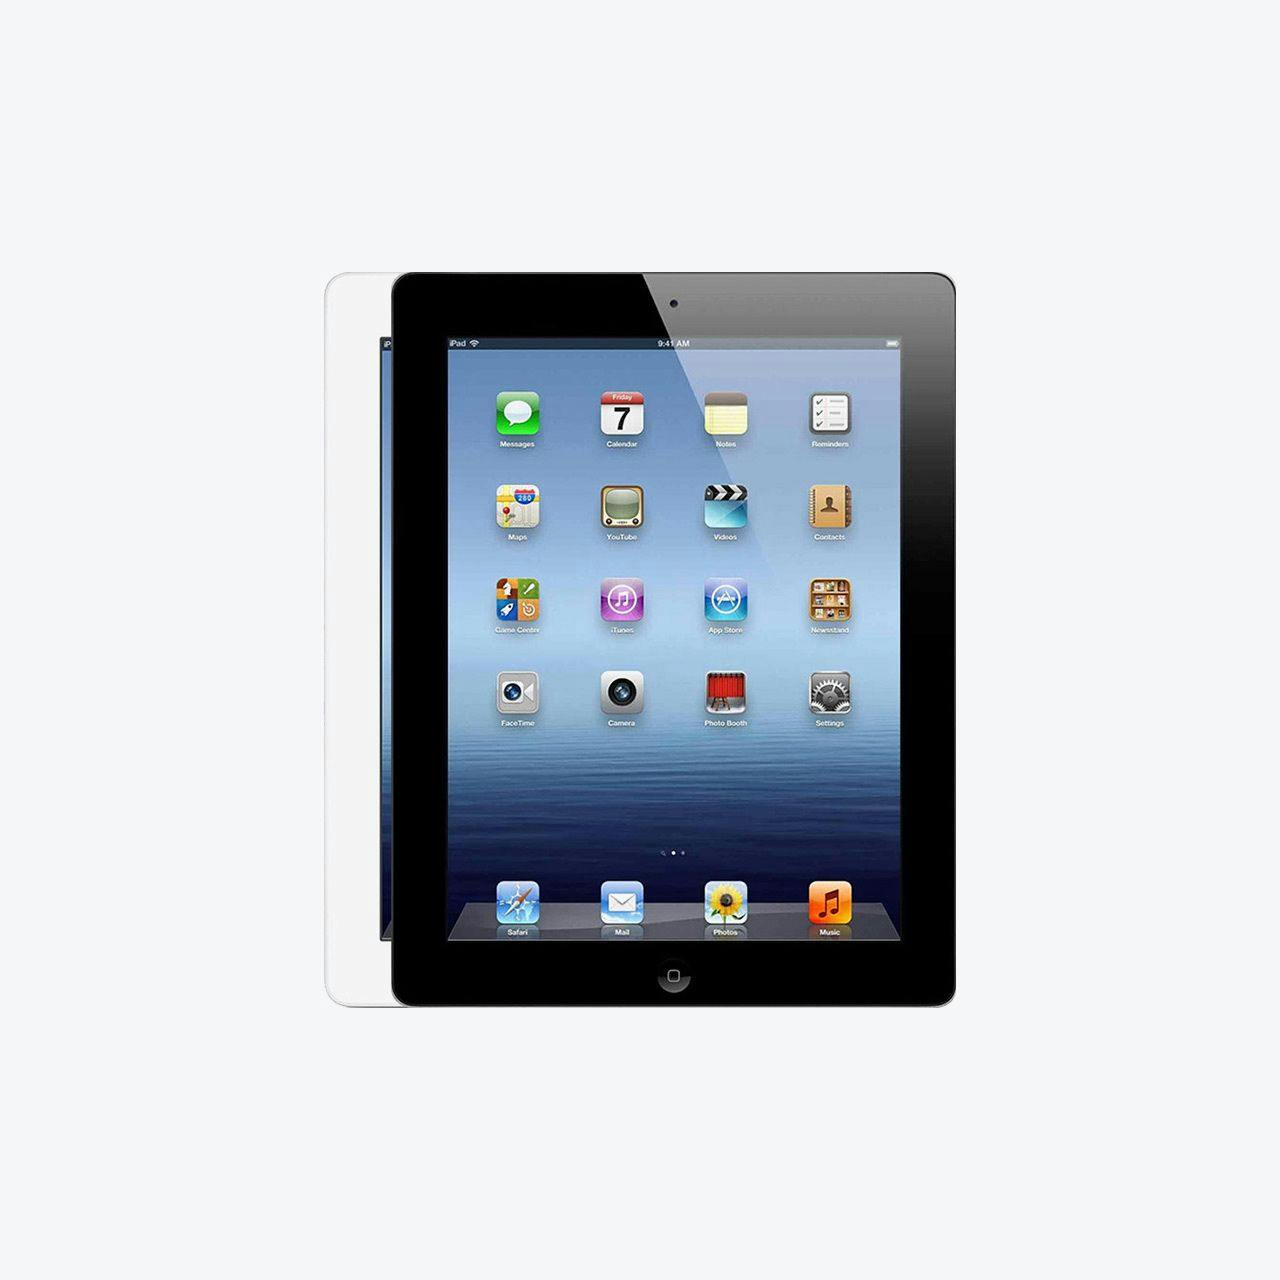 Image of iPad 4th Generation.